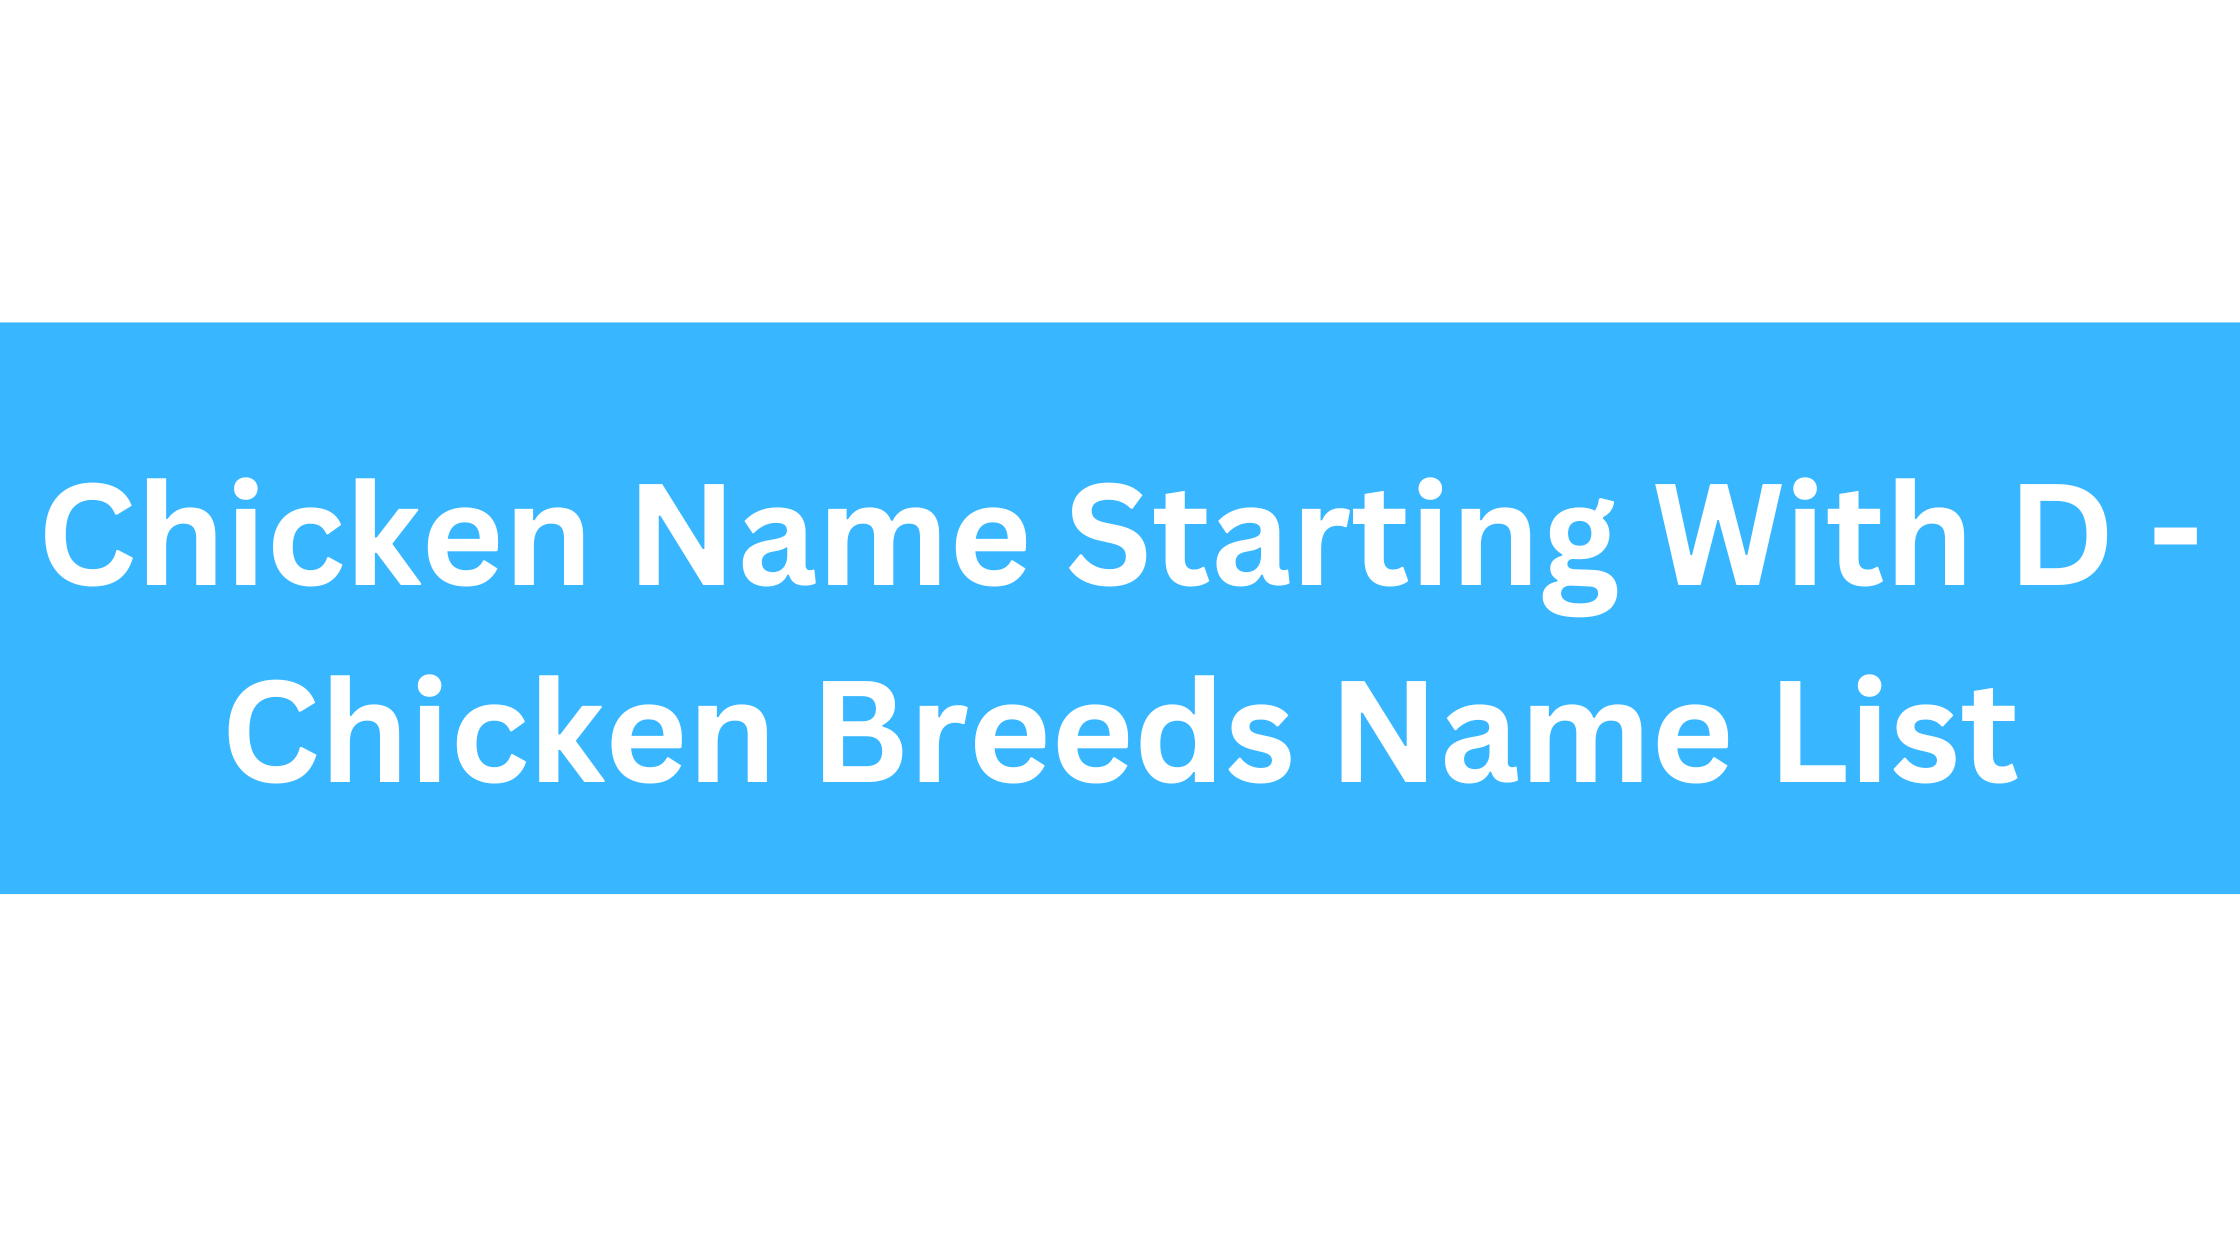 Chicken Breeds That Start With D